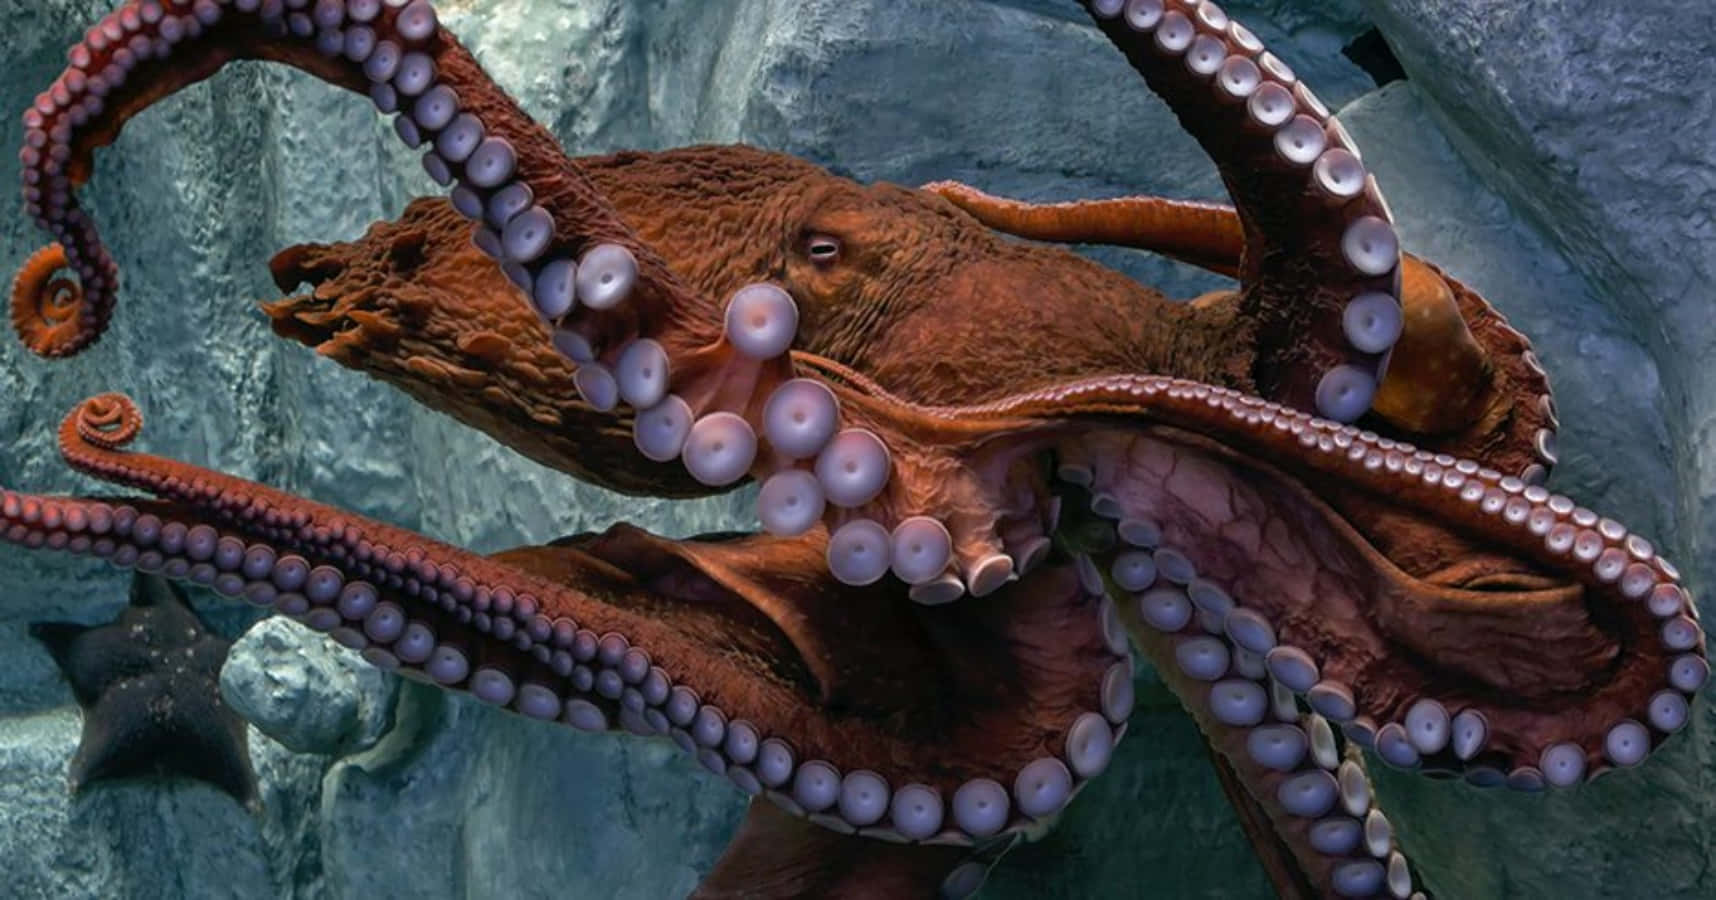 Giant Pacific Octopus Underwater Display Wallpaper